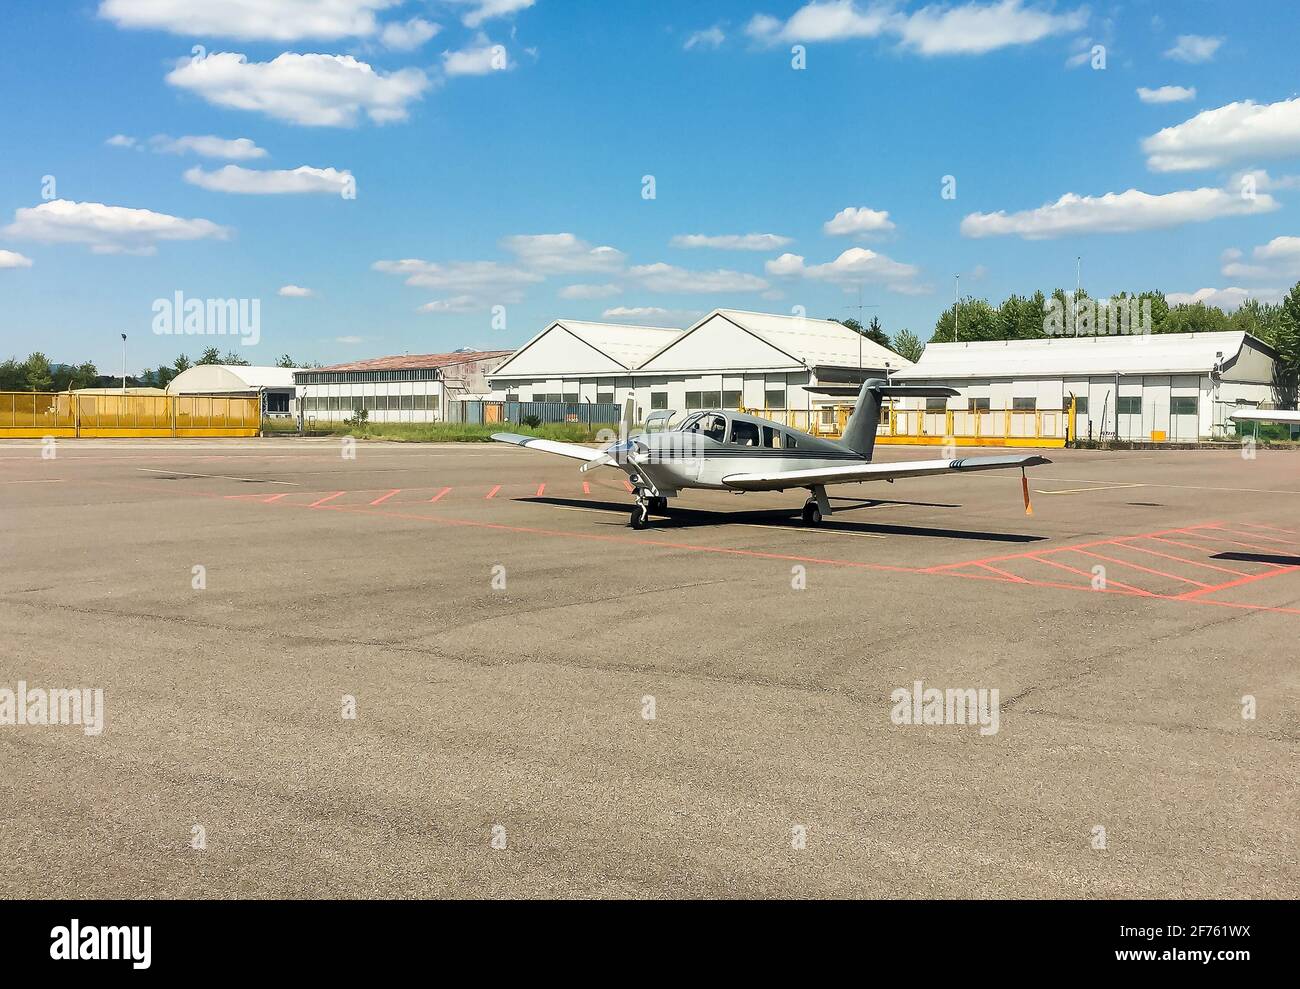 Kleine private Piper PA 28 Flugzeuge auf dem kleinen Flughafen Venegono, Provinz Varese, Italien geparkt Stockfoto